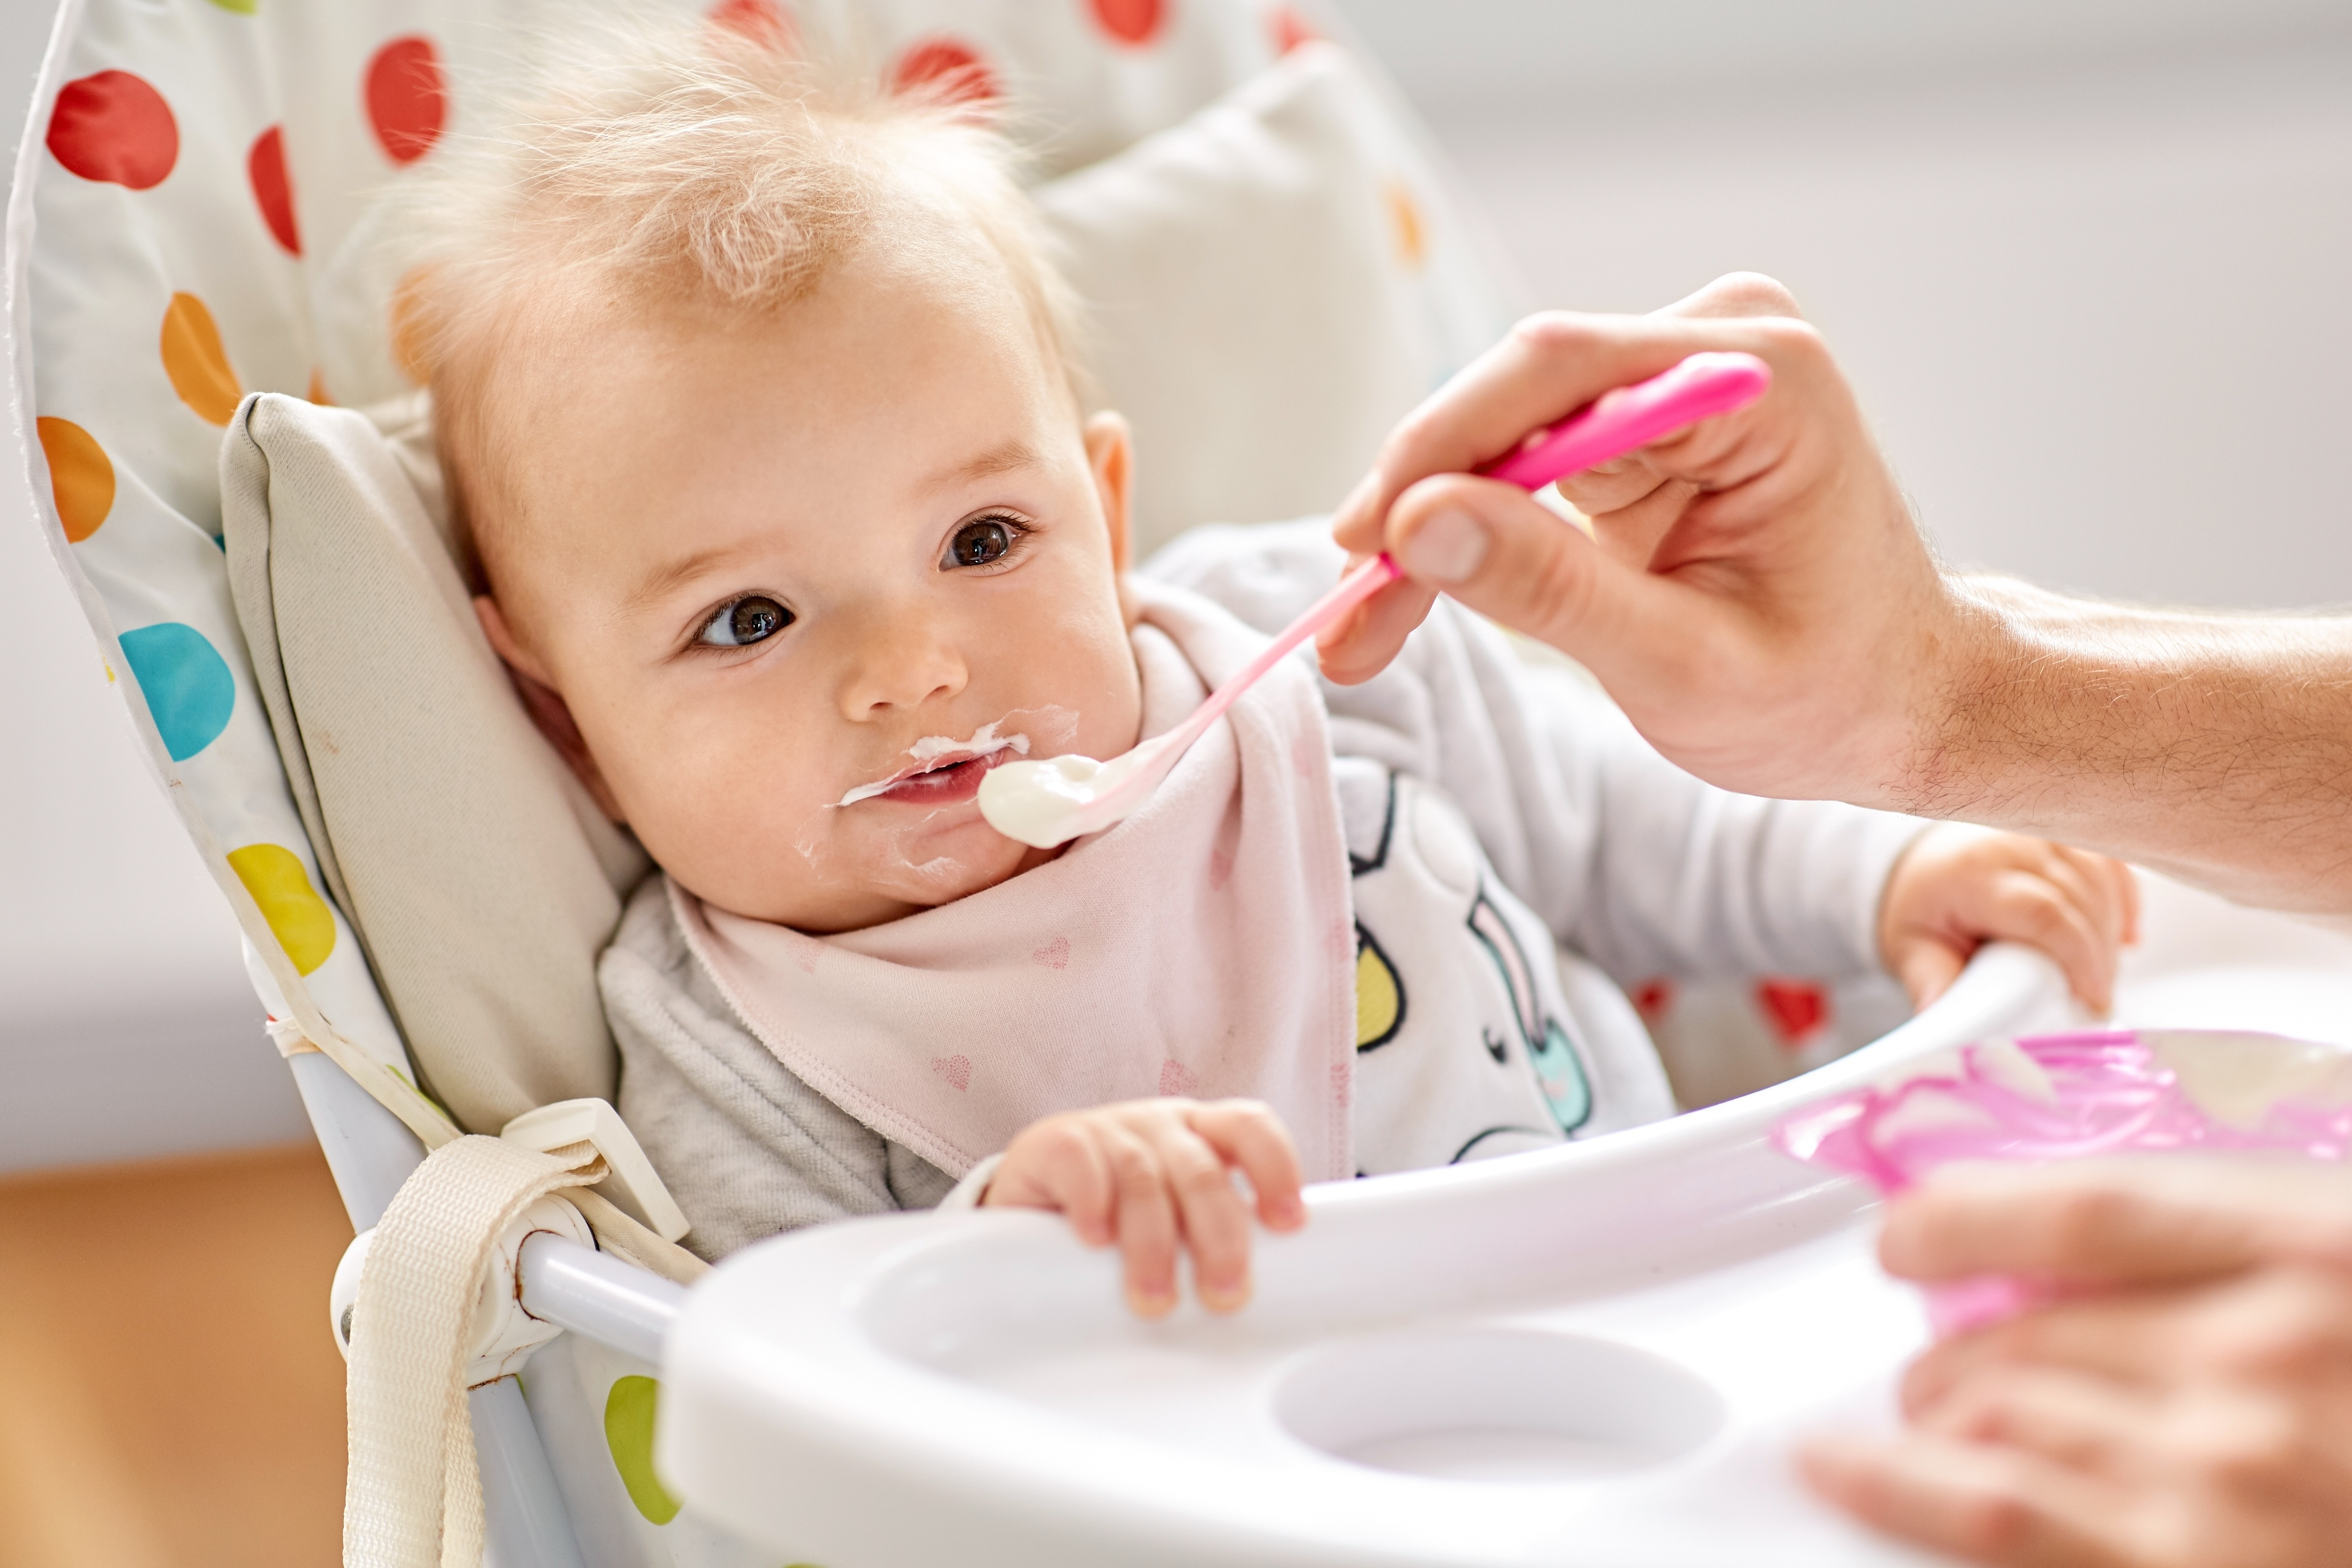 Alimentation Bébé 6 mois : Quelle quantité de lait pour mon nourrisson ?